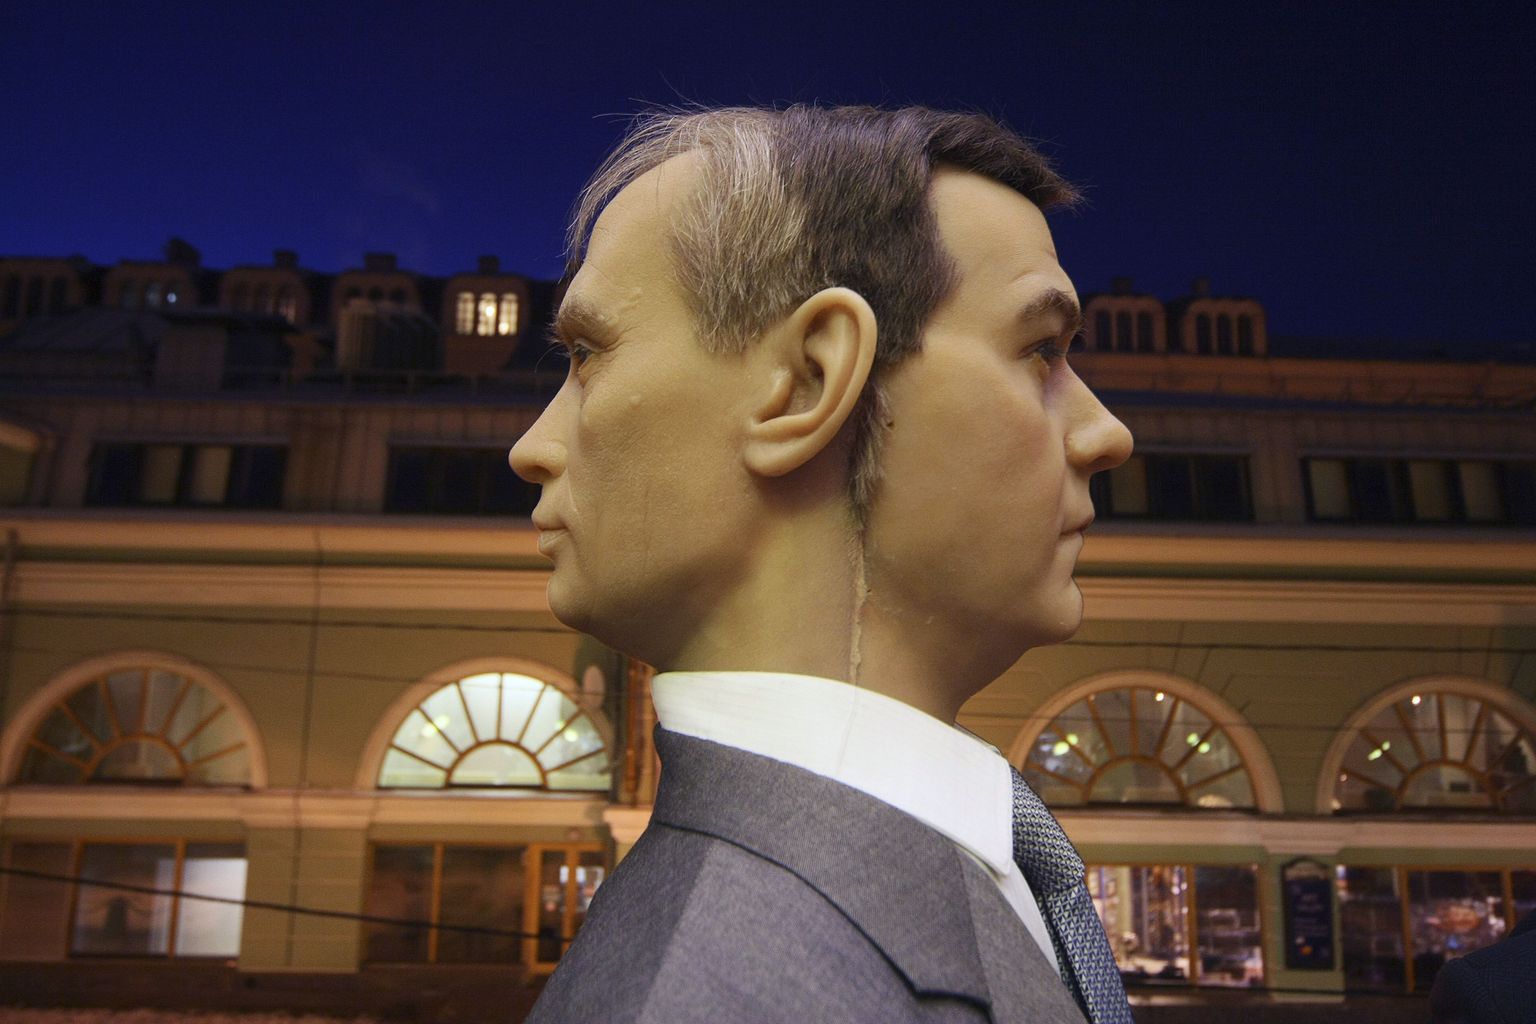 Peterburi vahakujude muuseumis on ühe keha küljes kahe näoga pea. Vladimir Putini nägu on vasakul ja Dmitri Medvedevi oma paremal.